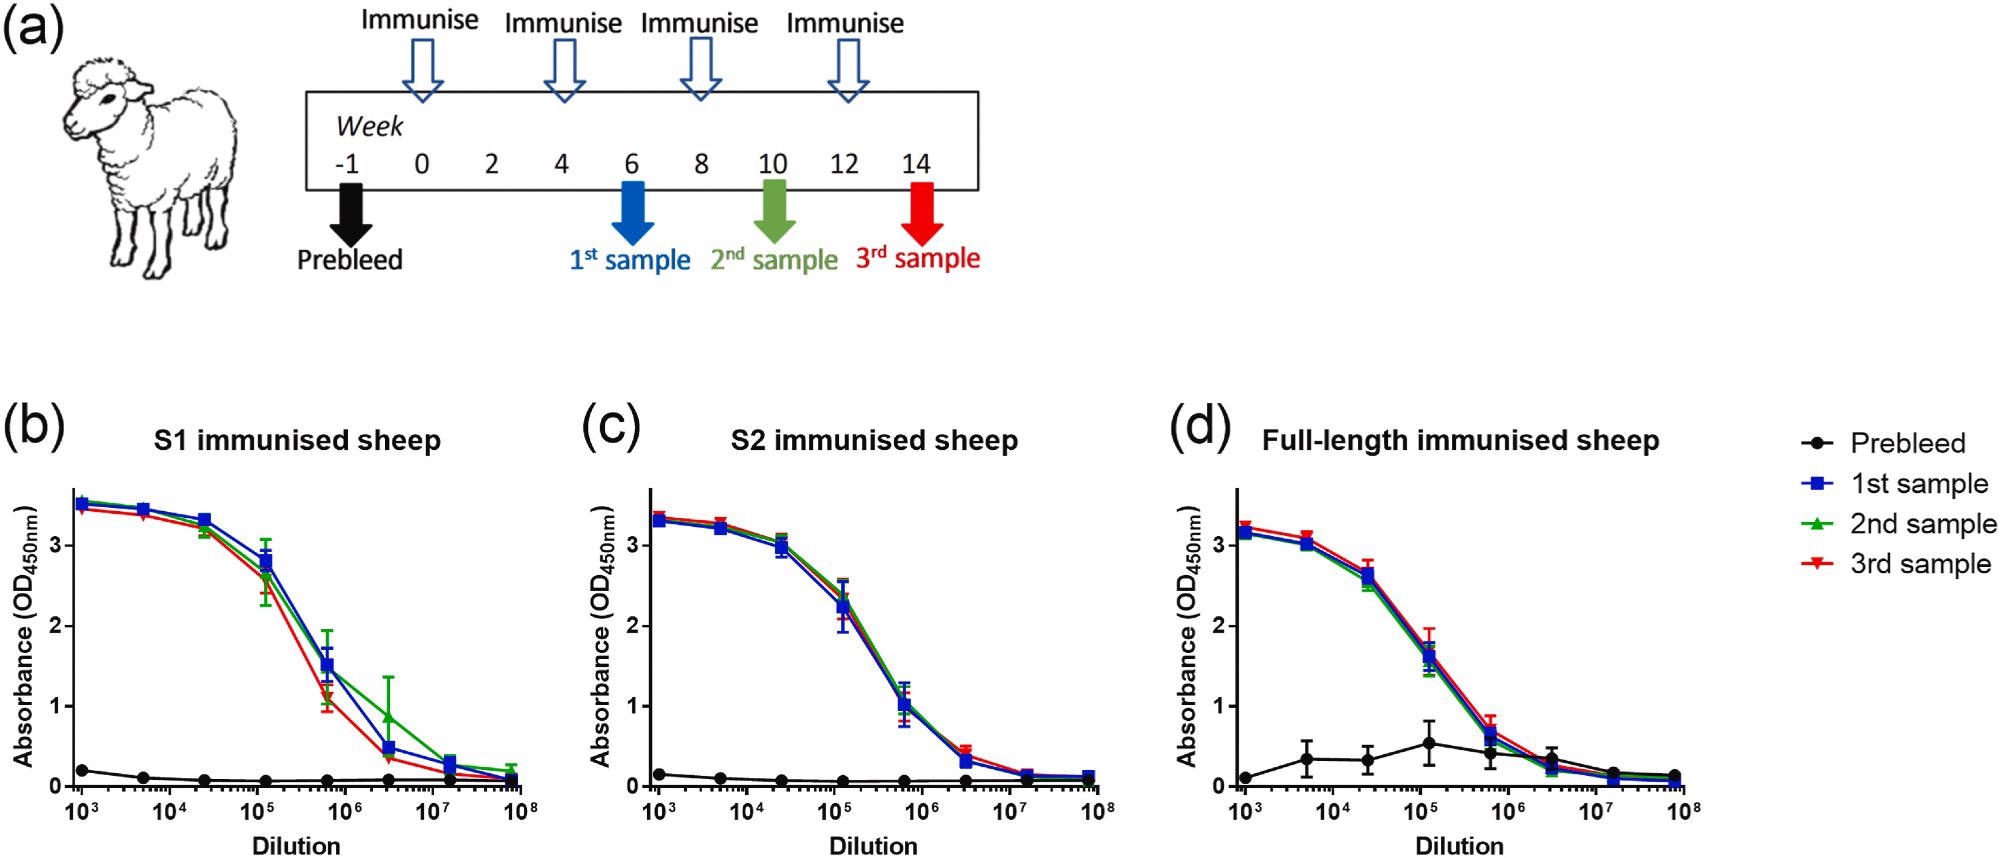 Bindung von Schafseren an rekombinantes SARS-CoV-2-Spike-Protein in voller Länge nach Immunisierung mit Glykoprotein-Antigenen.  (a) Gliederung des Studienplans.  (b) Reaktivität von S1-immunisierten Schafen, n = 3. (c) Reaktivität von S2-immunisierten Schafen, n = 3. (d) Reaktivität von in voller Länge immunisierten Schafen, n = 6. Linien zeigen Mittelwerte mit Fehlerbalken, die den Standardfehler angeben.